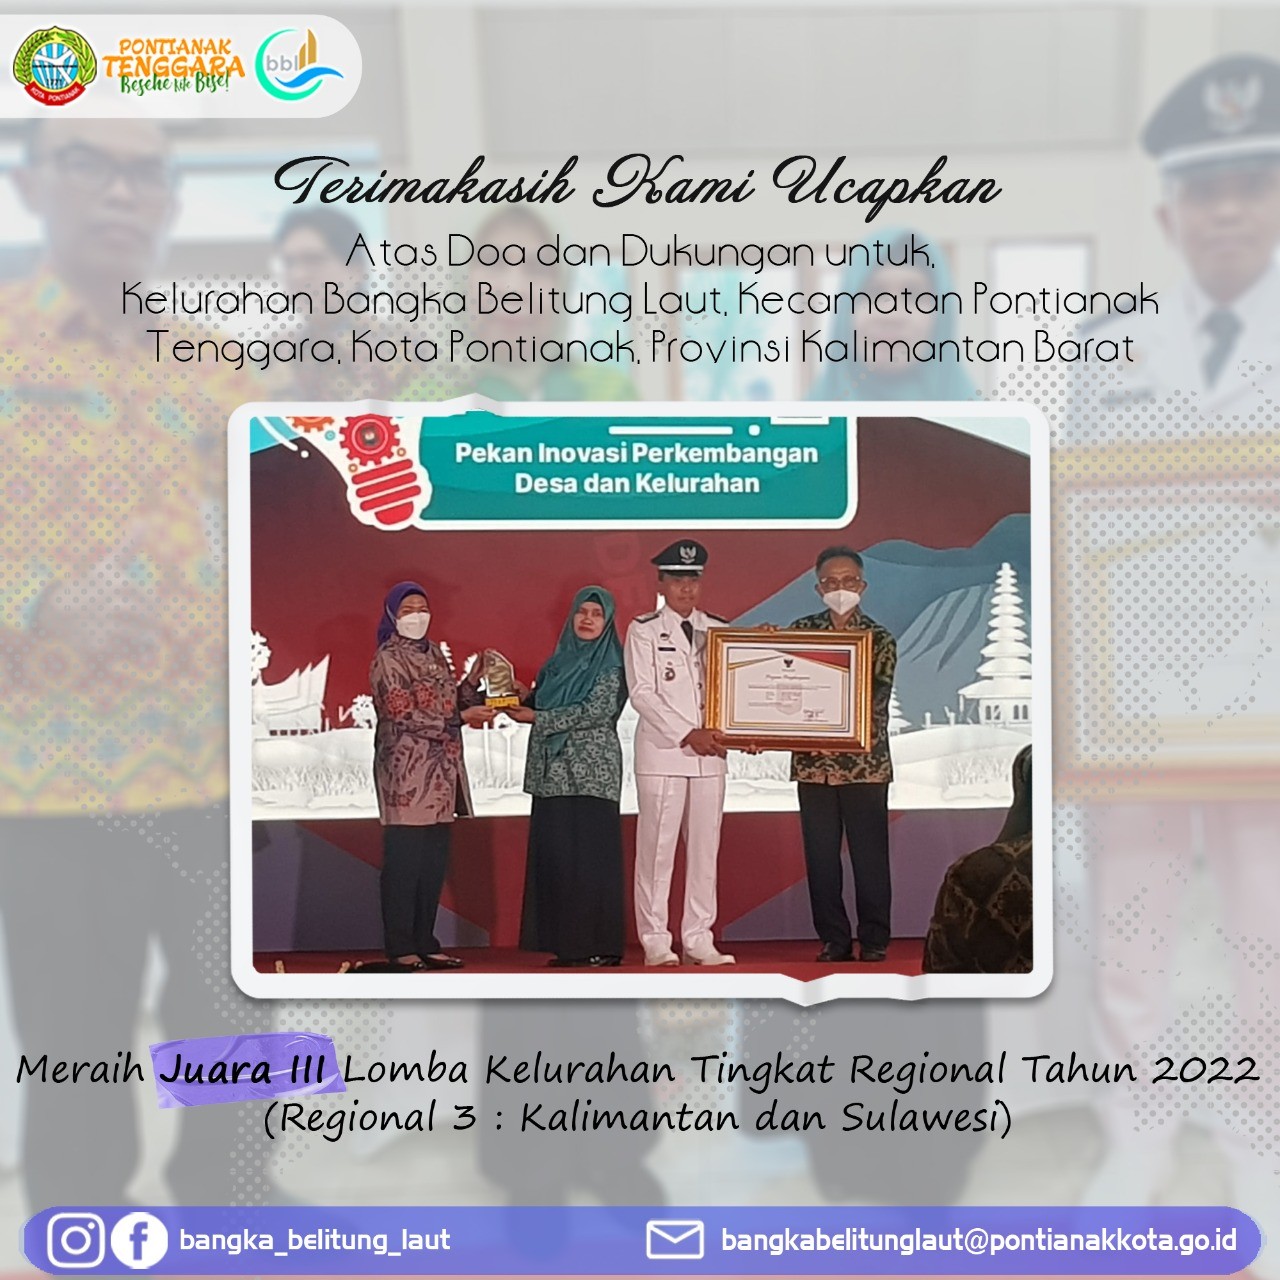 Juara 3 Lomba Kelurahan Tingkat Regional 3 (Kalimantan dan Sulawesi) Tahun 2022